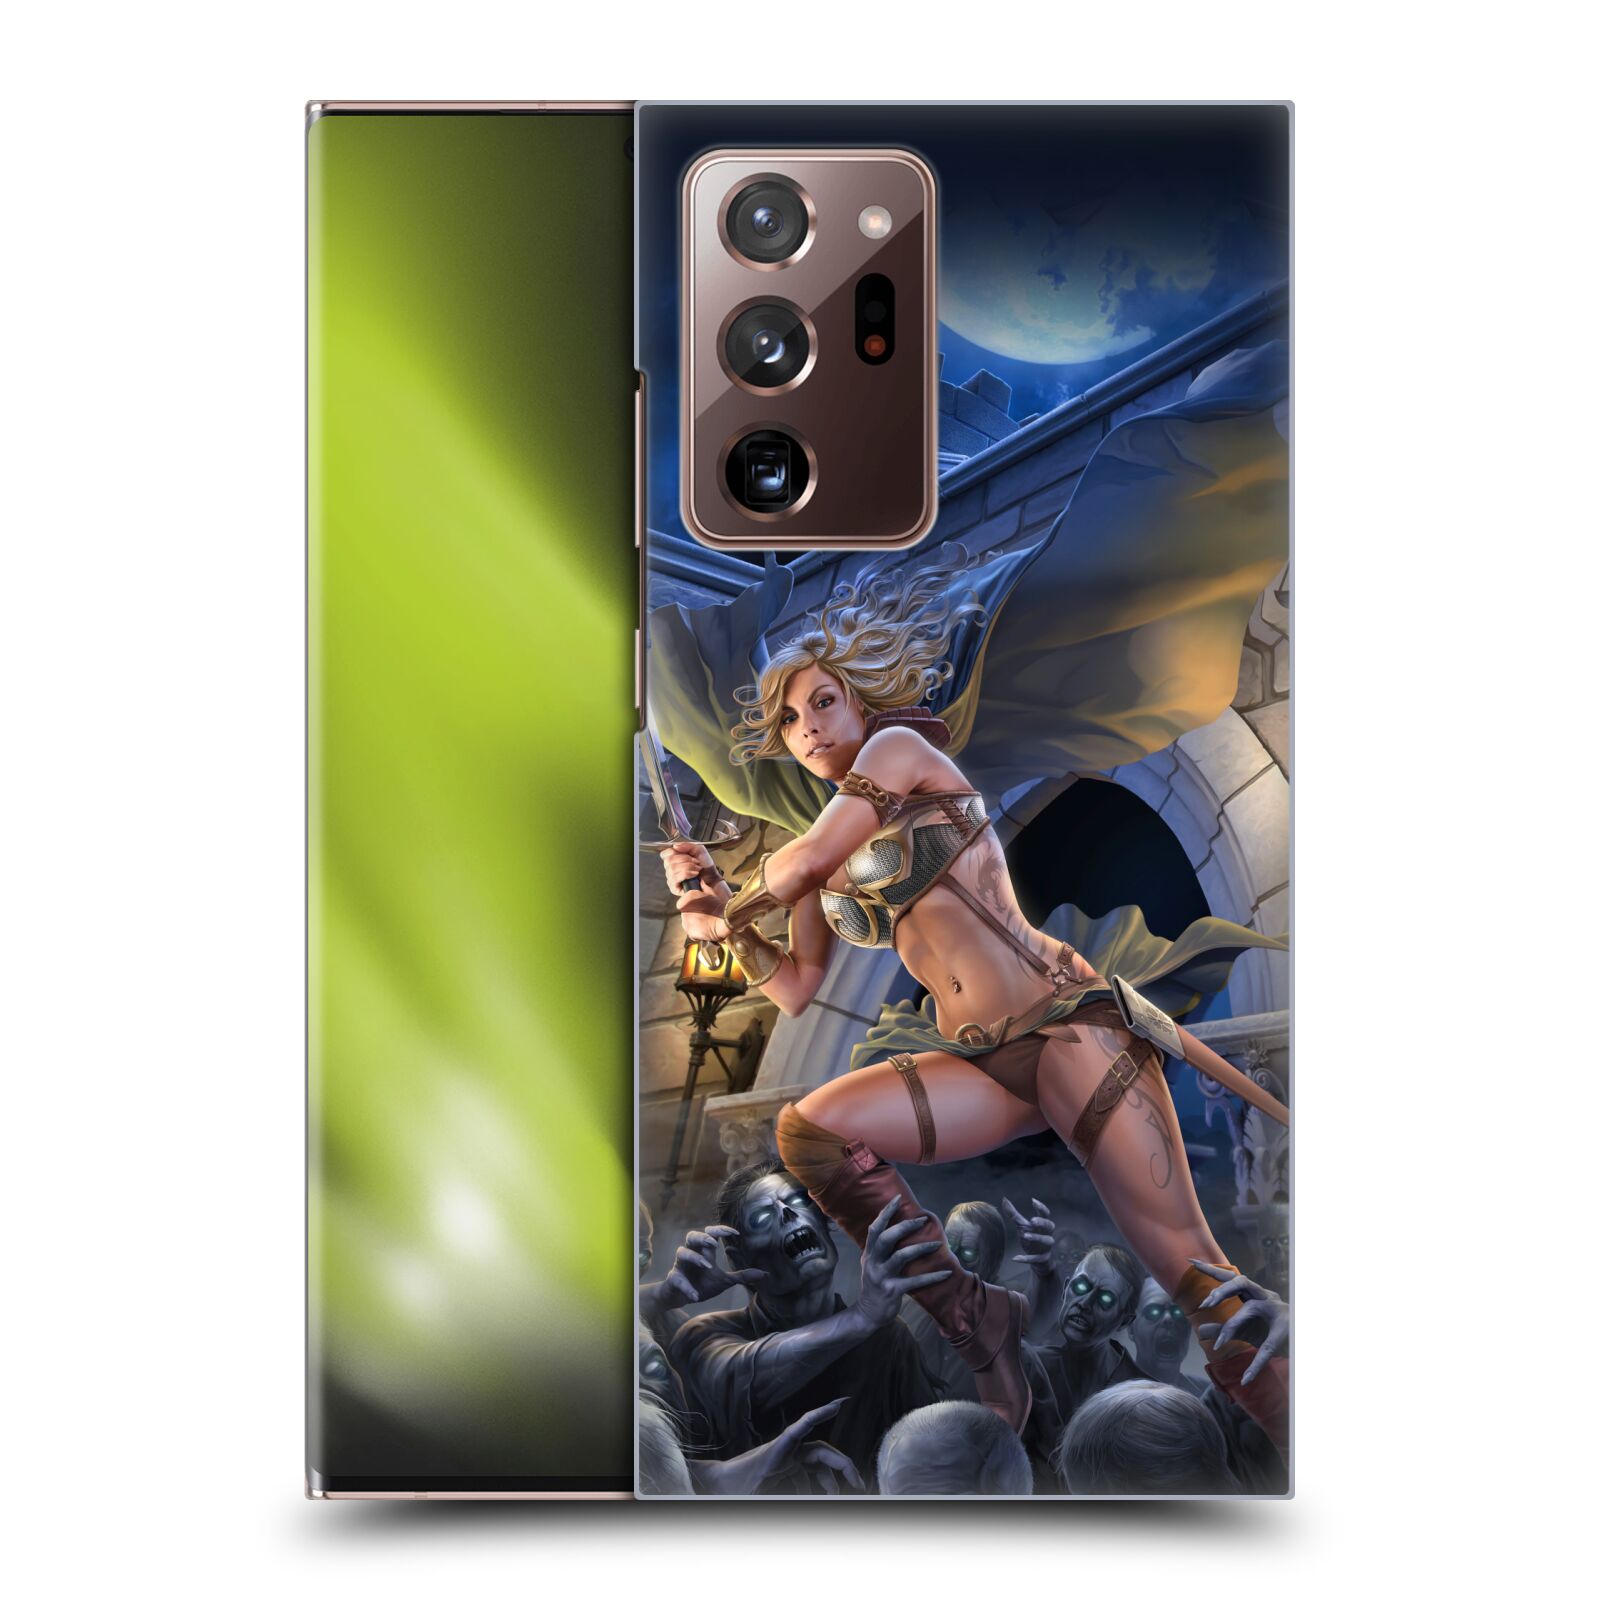 Pouzdro na mobil Samsung Galaxy Note 20 ULTRA - HEAD CASE - Fantasy kresby Tom Wood - Princezna bojovnice a zombies